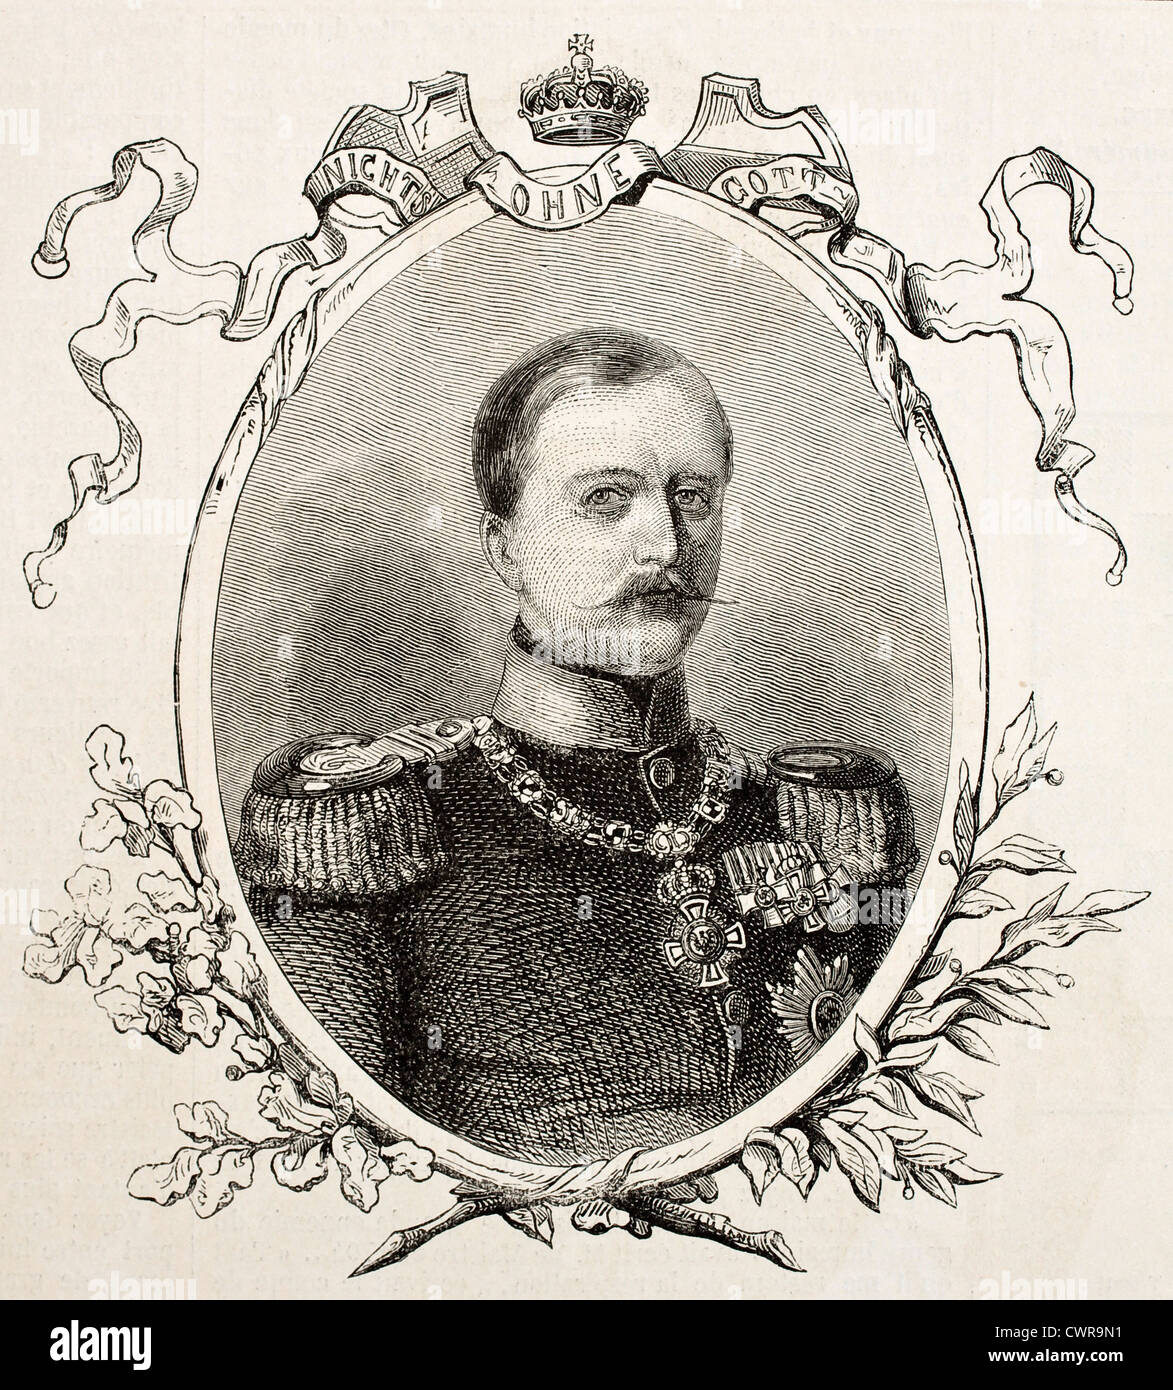 Prince Charles-Anthony of Hohenzollern-Sigmaringen Stock Photo